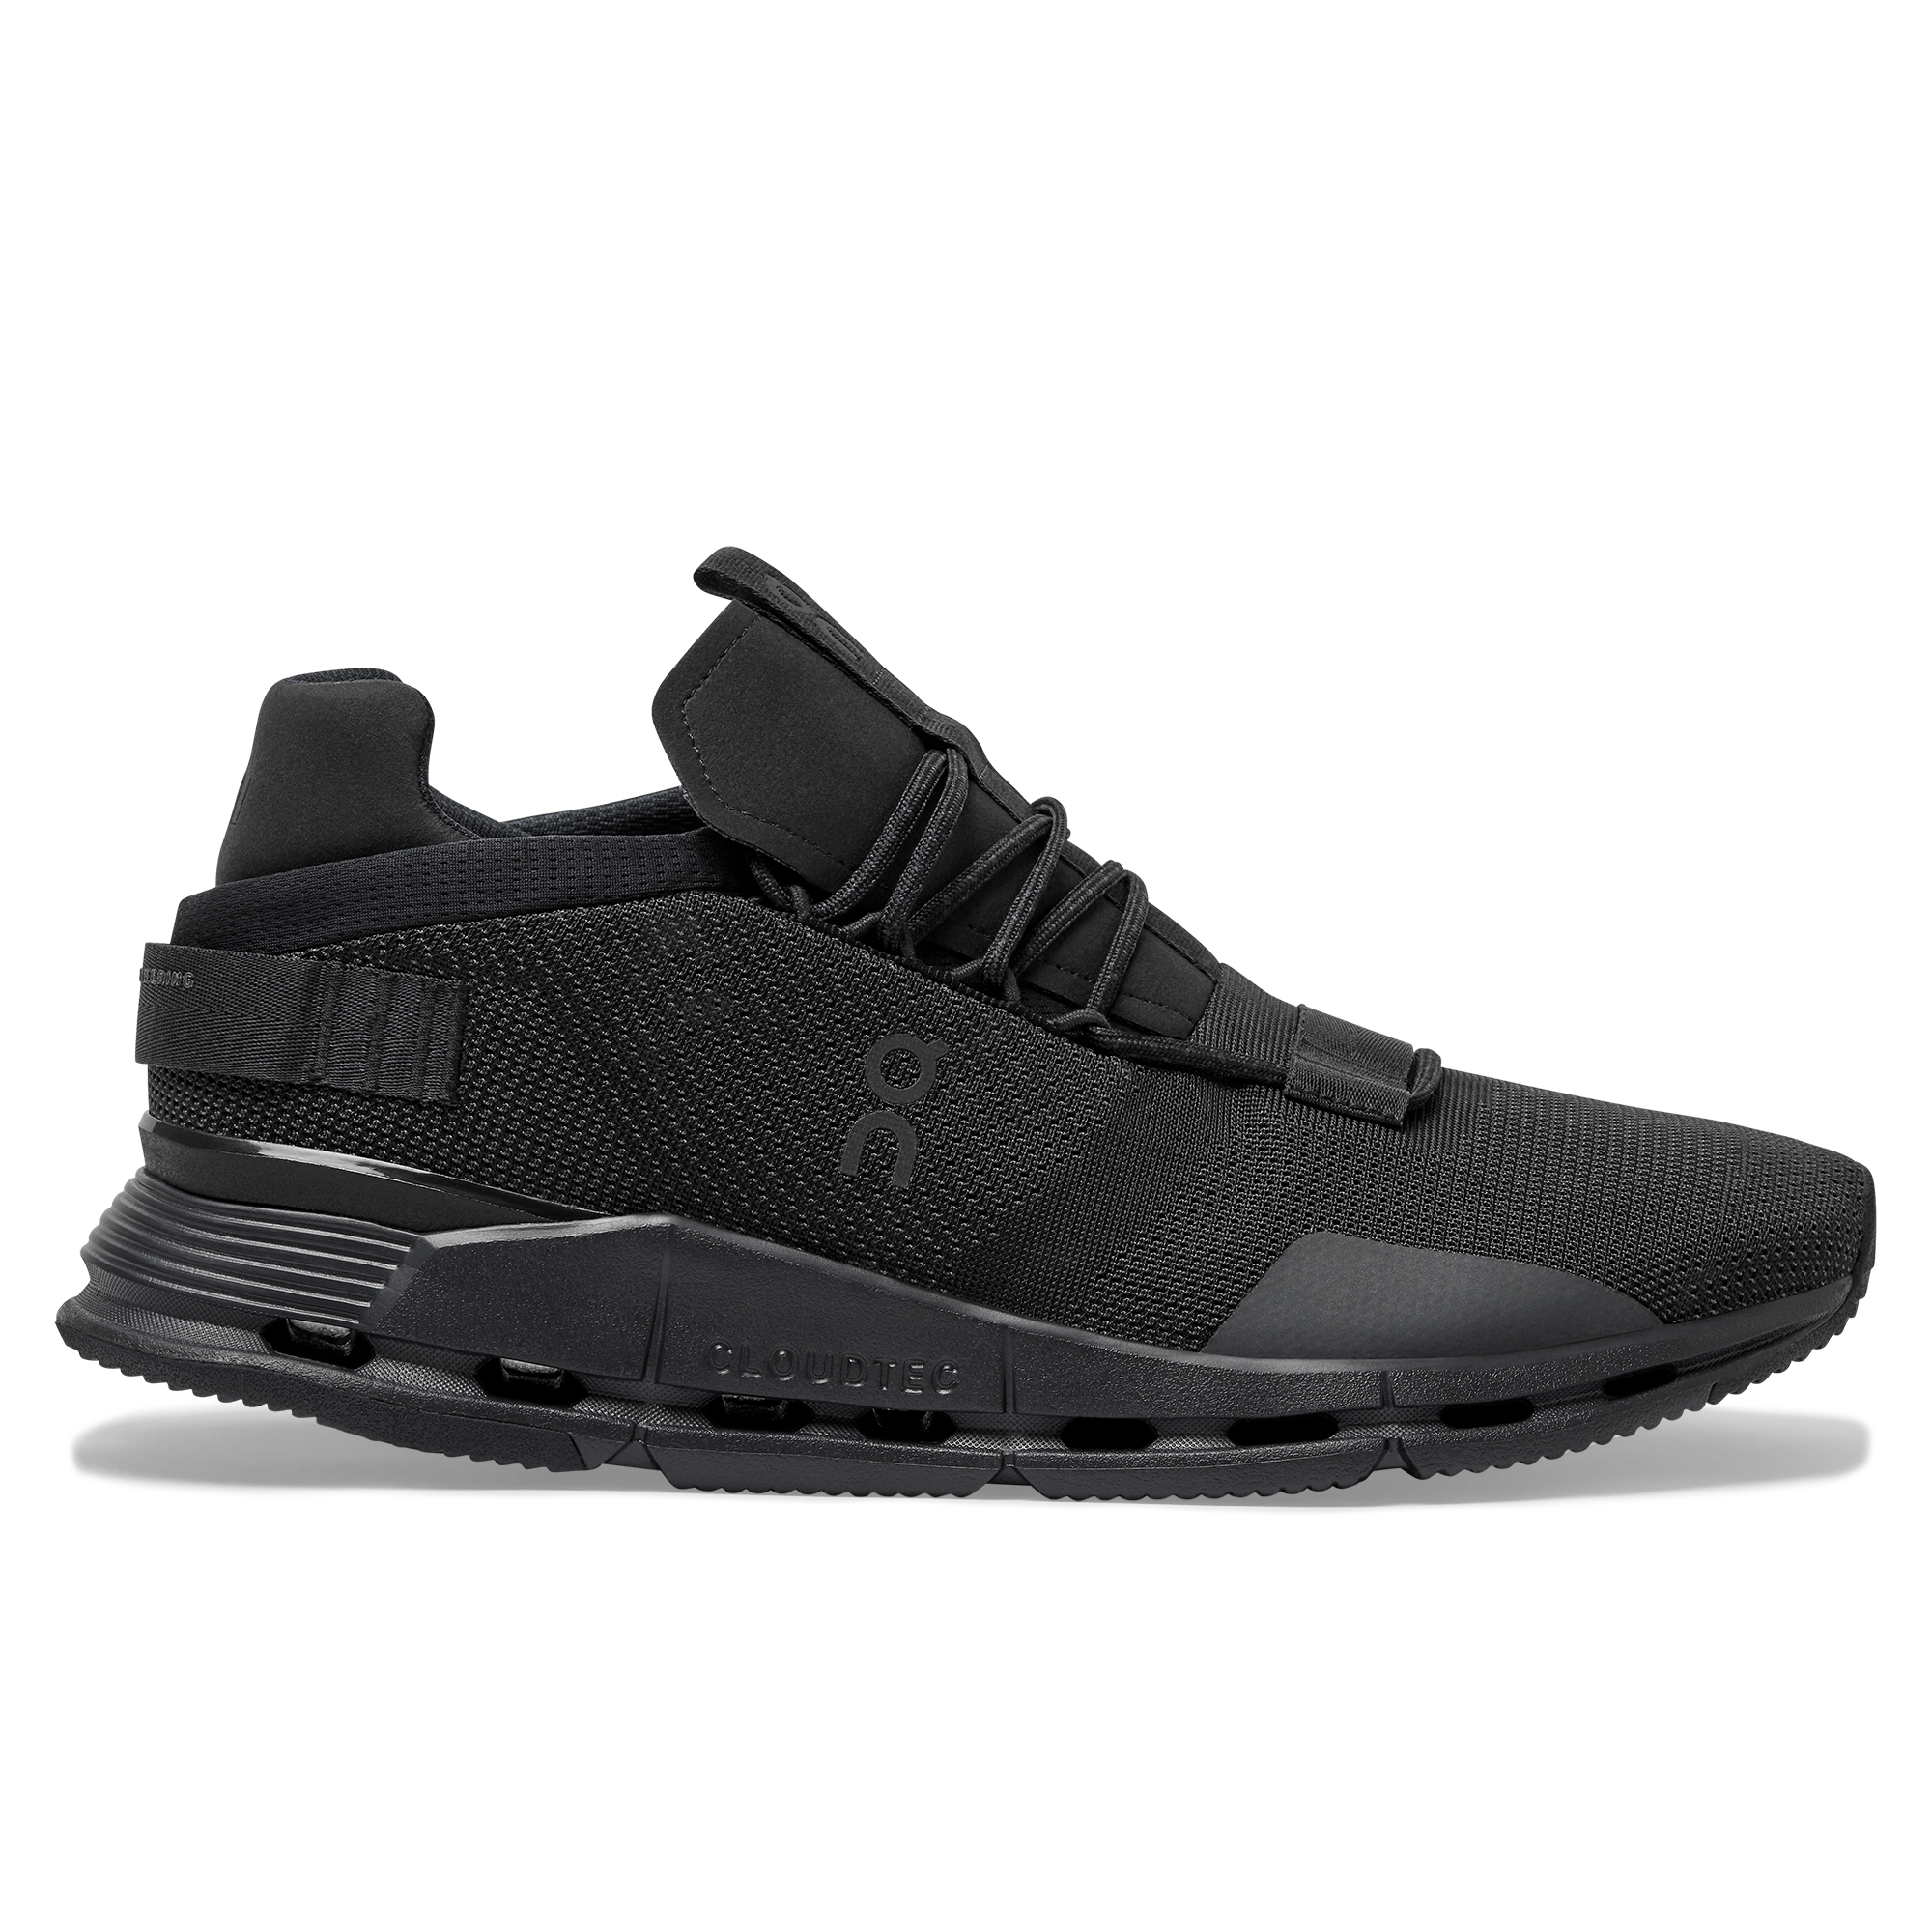  On Zapatillas deportivas sintéticas impermeables Cloudwander  para hombre, Black Eclipse : Ropa, Zapatos y Joyería